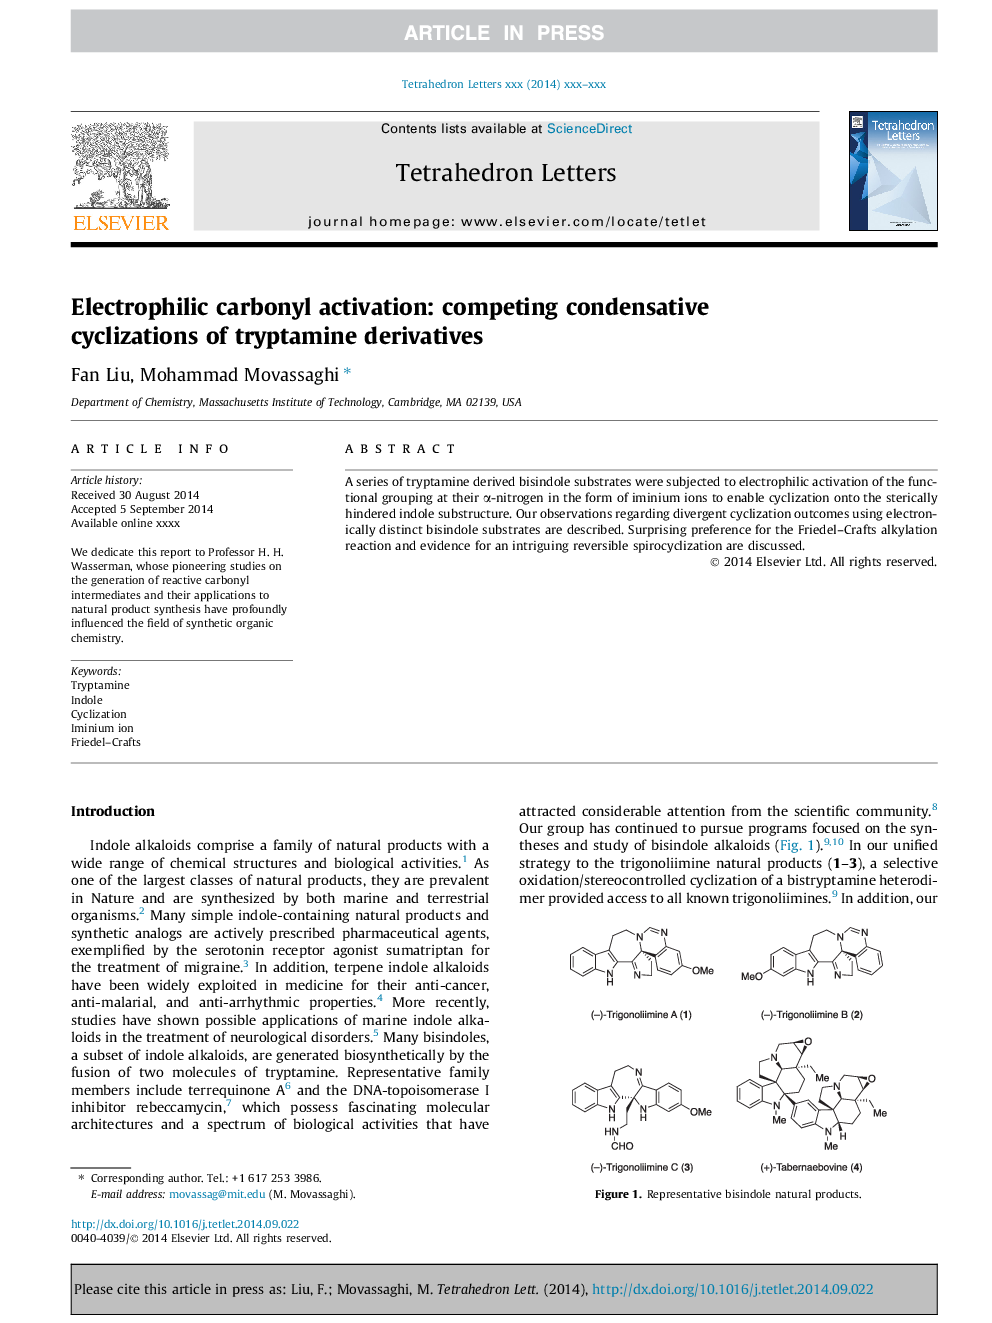 Electrophilic carbonyl activation: competing condensative cyclizations of tryptamine derivatives